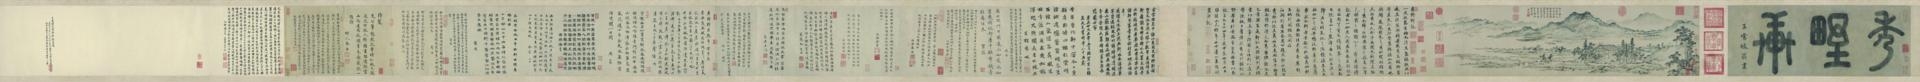 元 朱德润 秀野轩图卷纸本29.1 x812.2